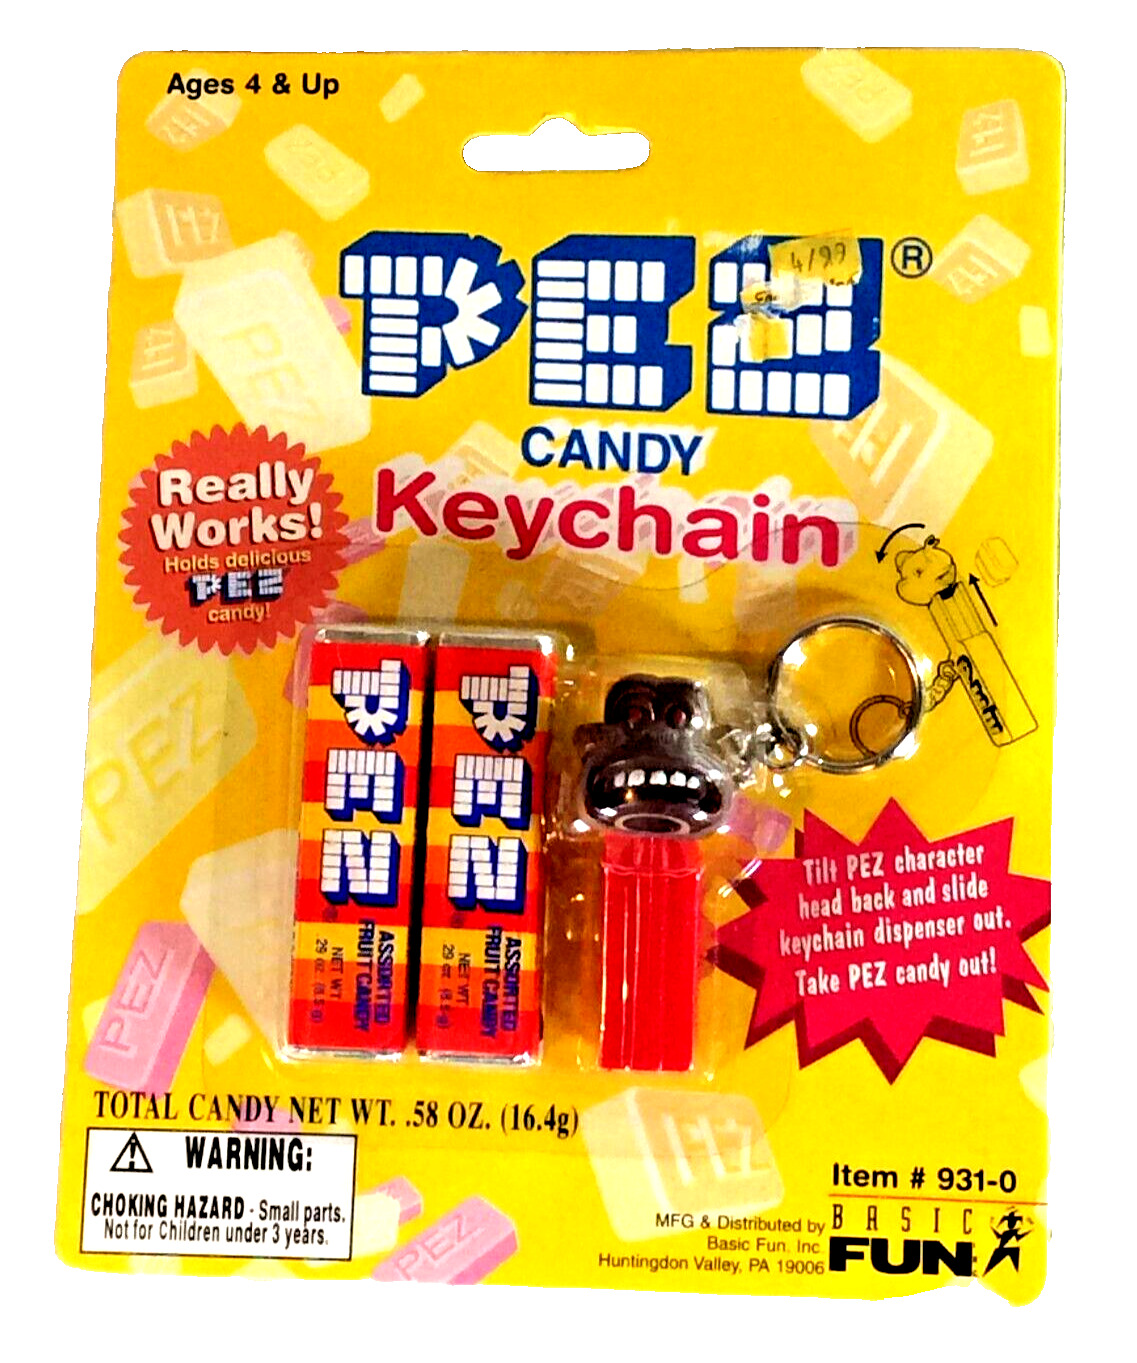 nib pez candy keychain despensere nib -1999 931-0